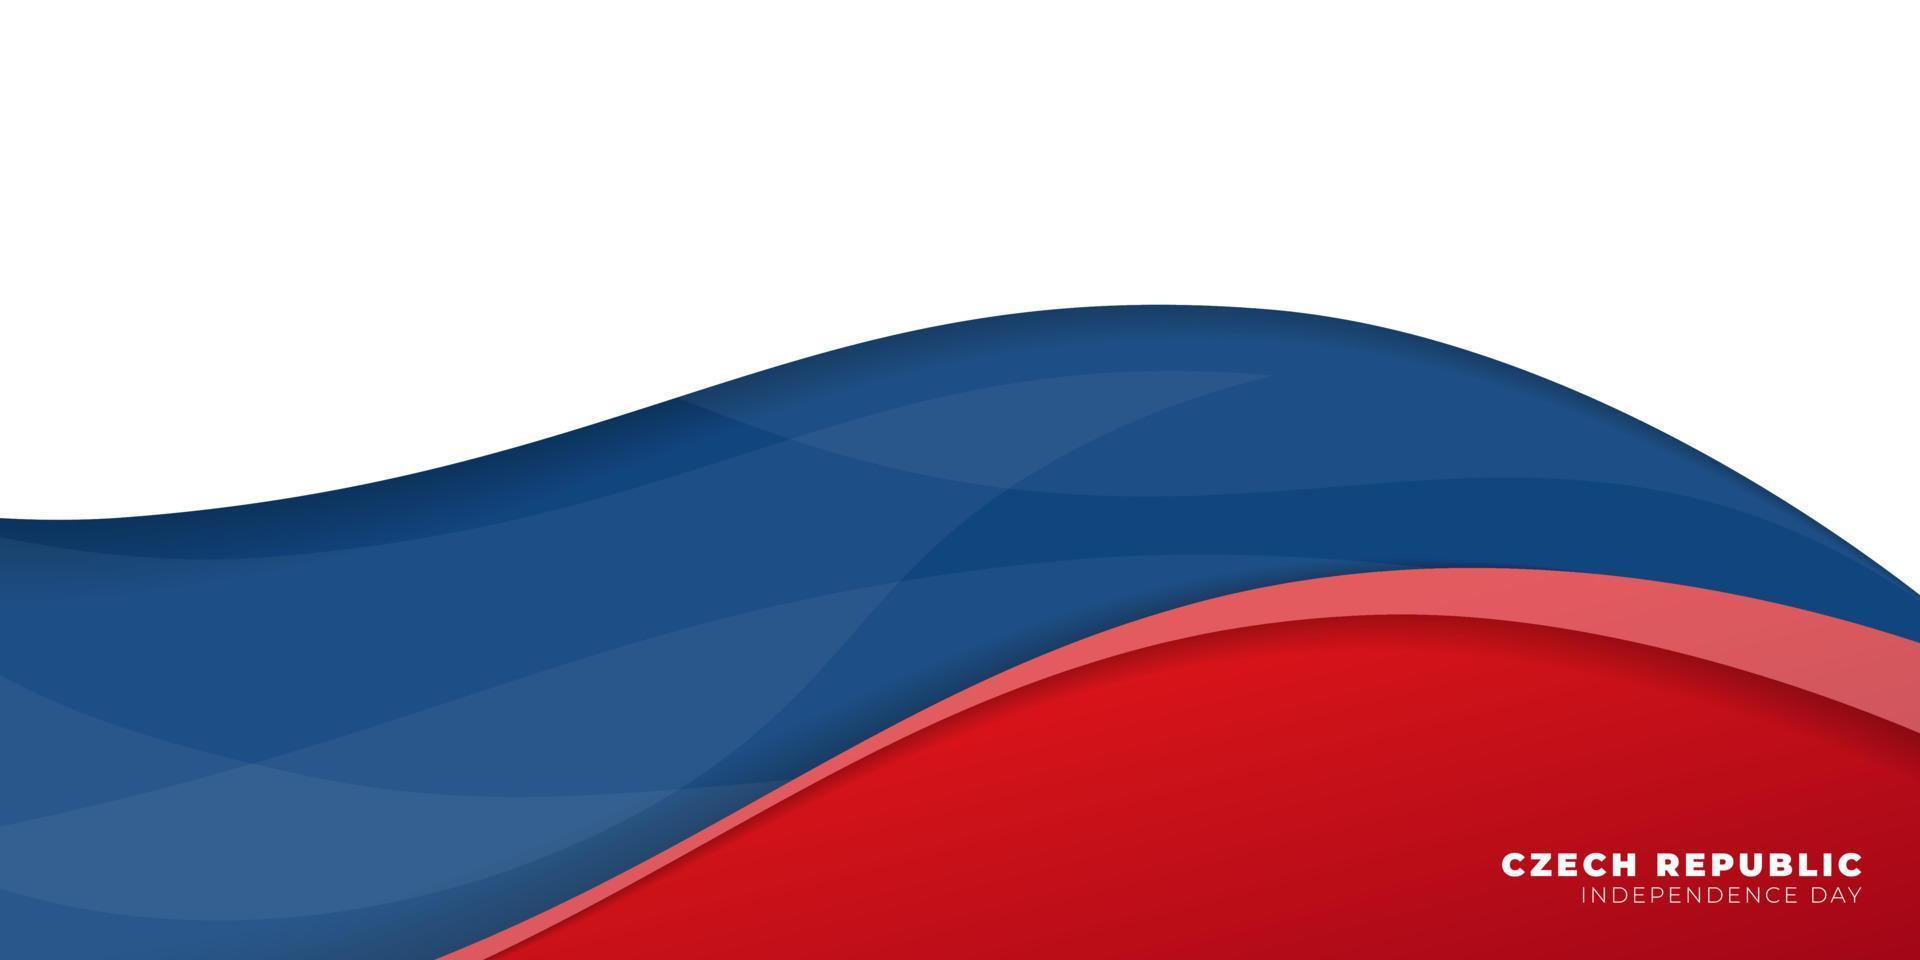 zwaaiend rood en blauw ontwerp op een witte achtergrond. Tsjechische Republiek onafhankelijkheidsdag achtergrond sjabloon. vector